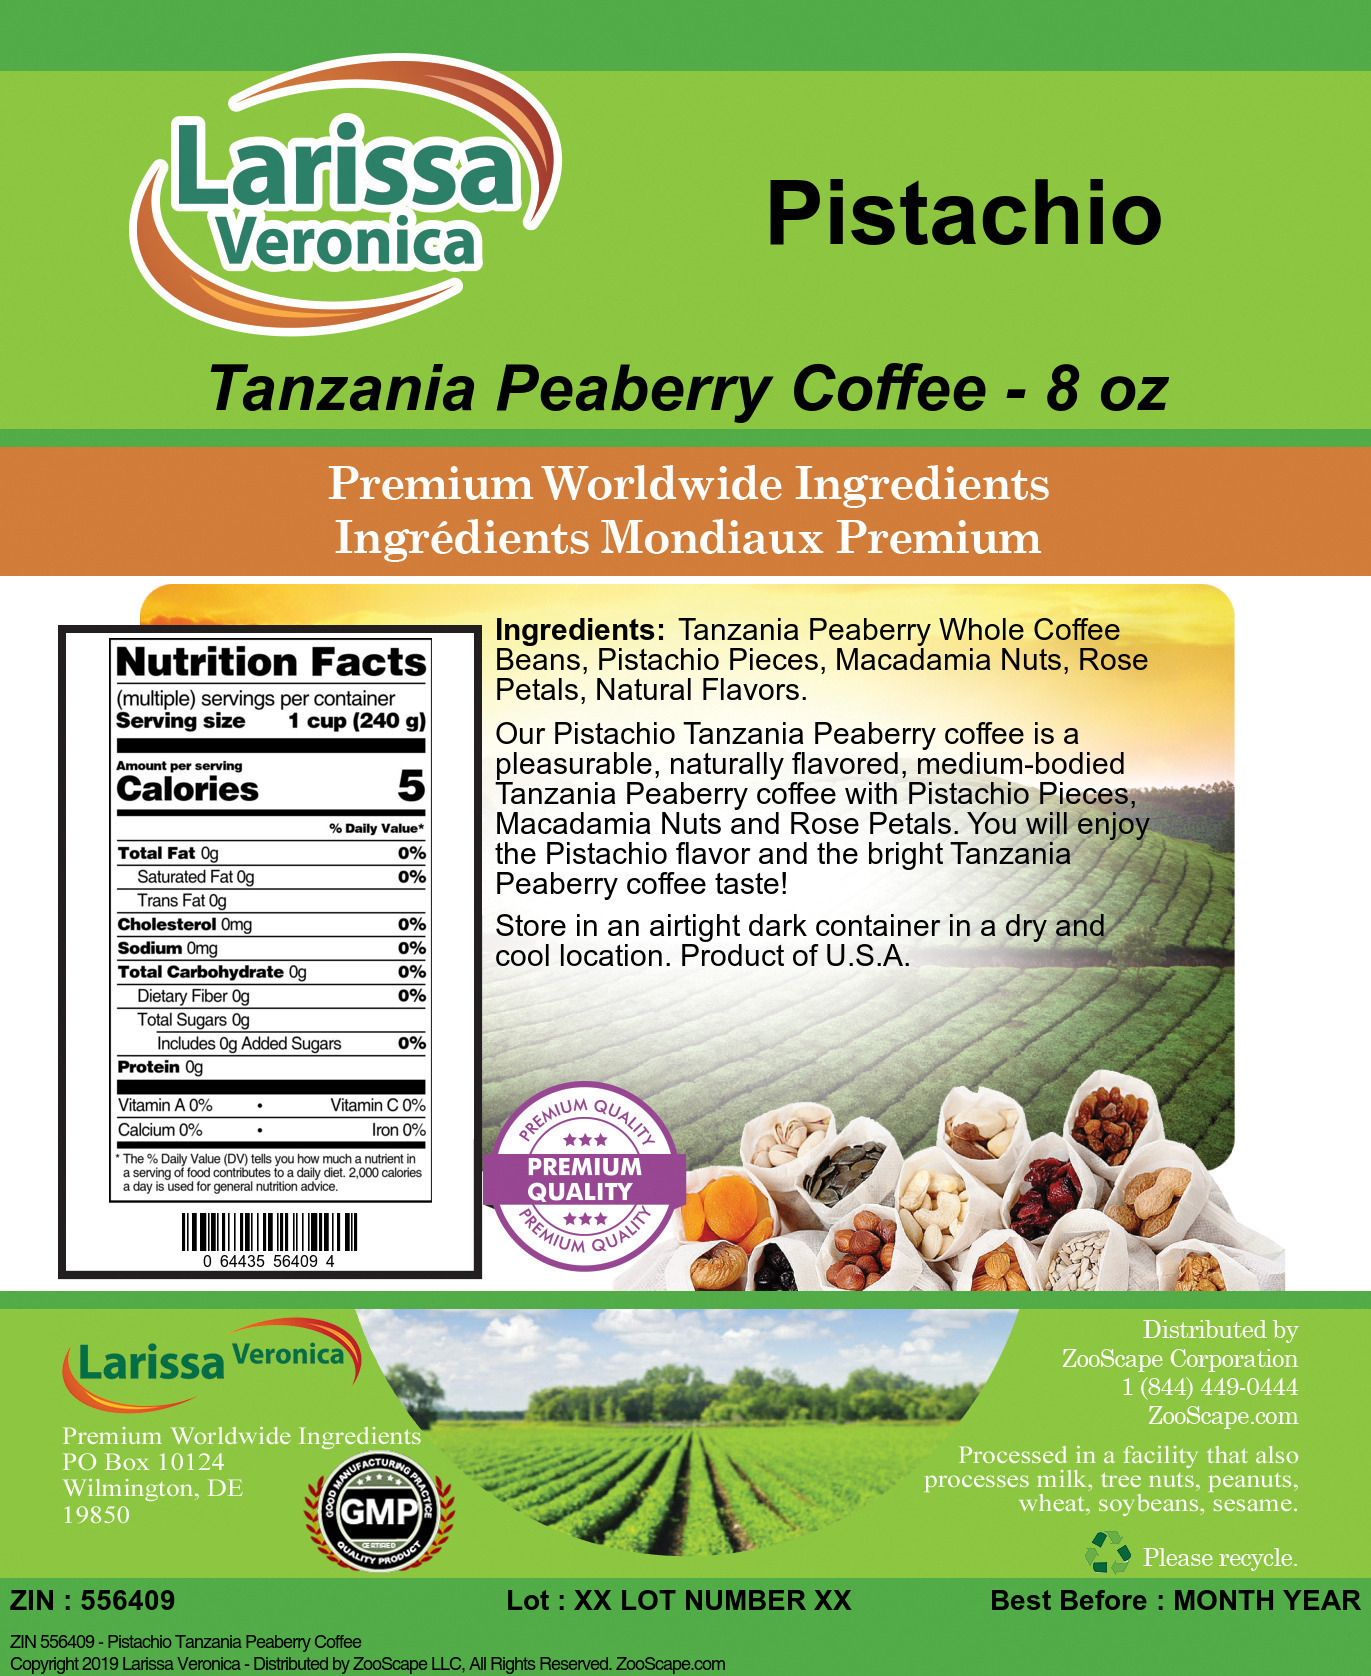 Pistachio Tanzania Peaberry Coffee - Label